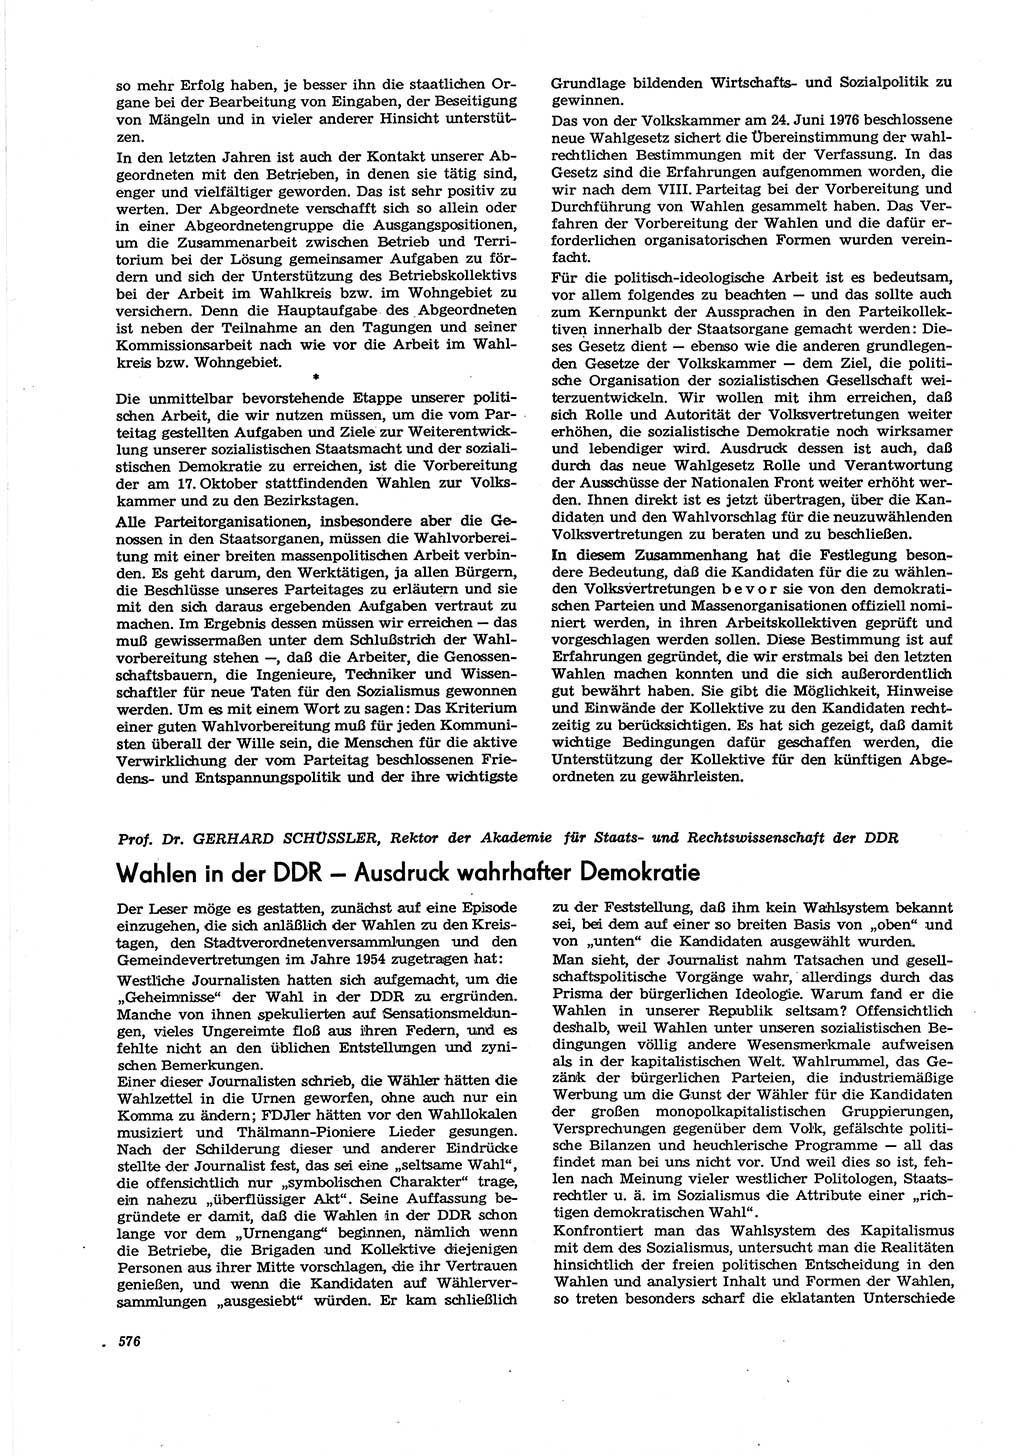 Neue Justiz (NJ), Zeitschrift für Recht und Rechtswissenschaft [Deutsche Demokratische Republik (DDR)], 30. Jahrgang 1976, Seite 576 (NJ DDR 1976, S. 576)